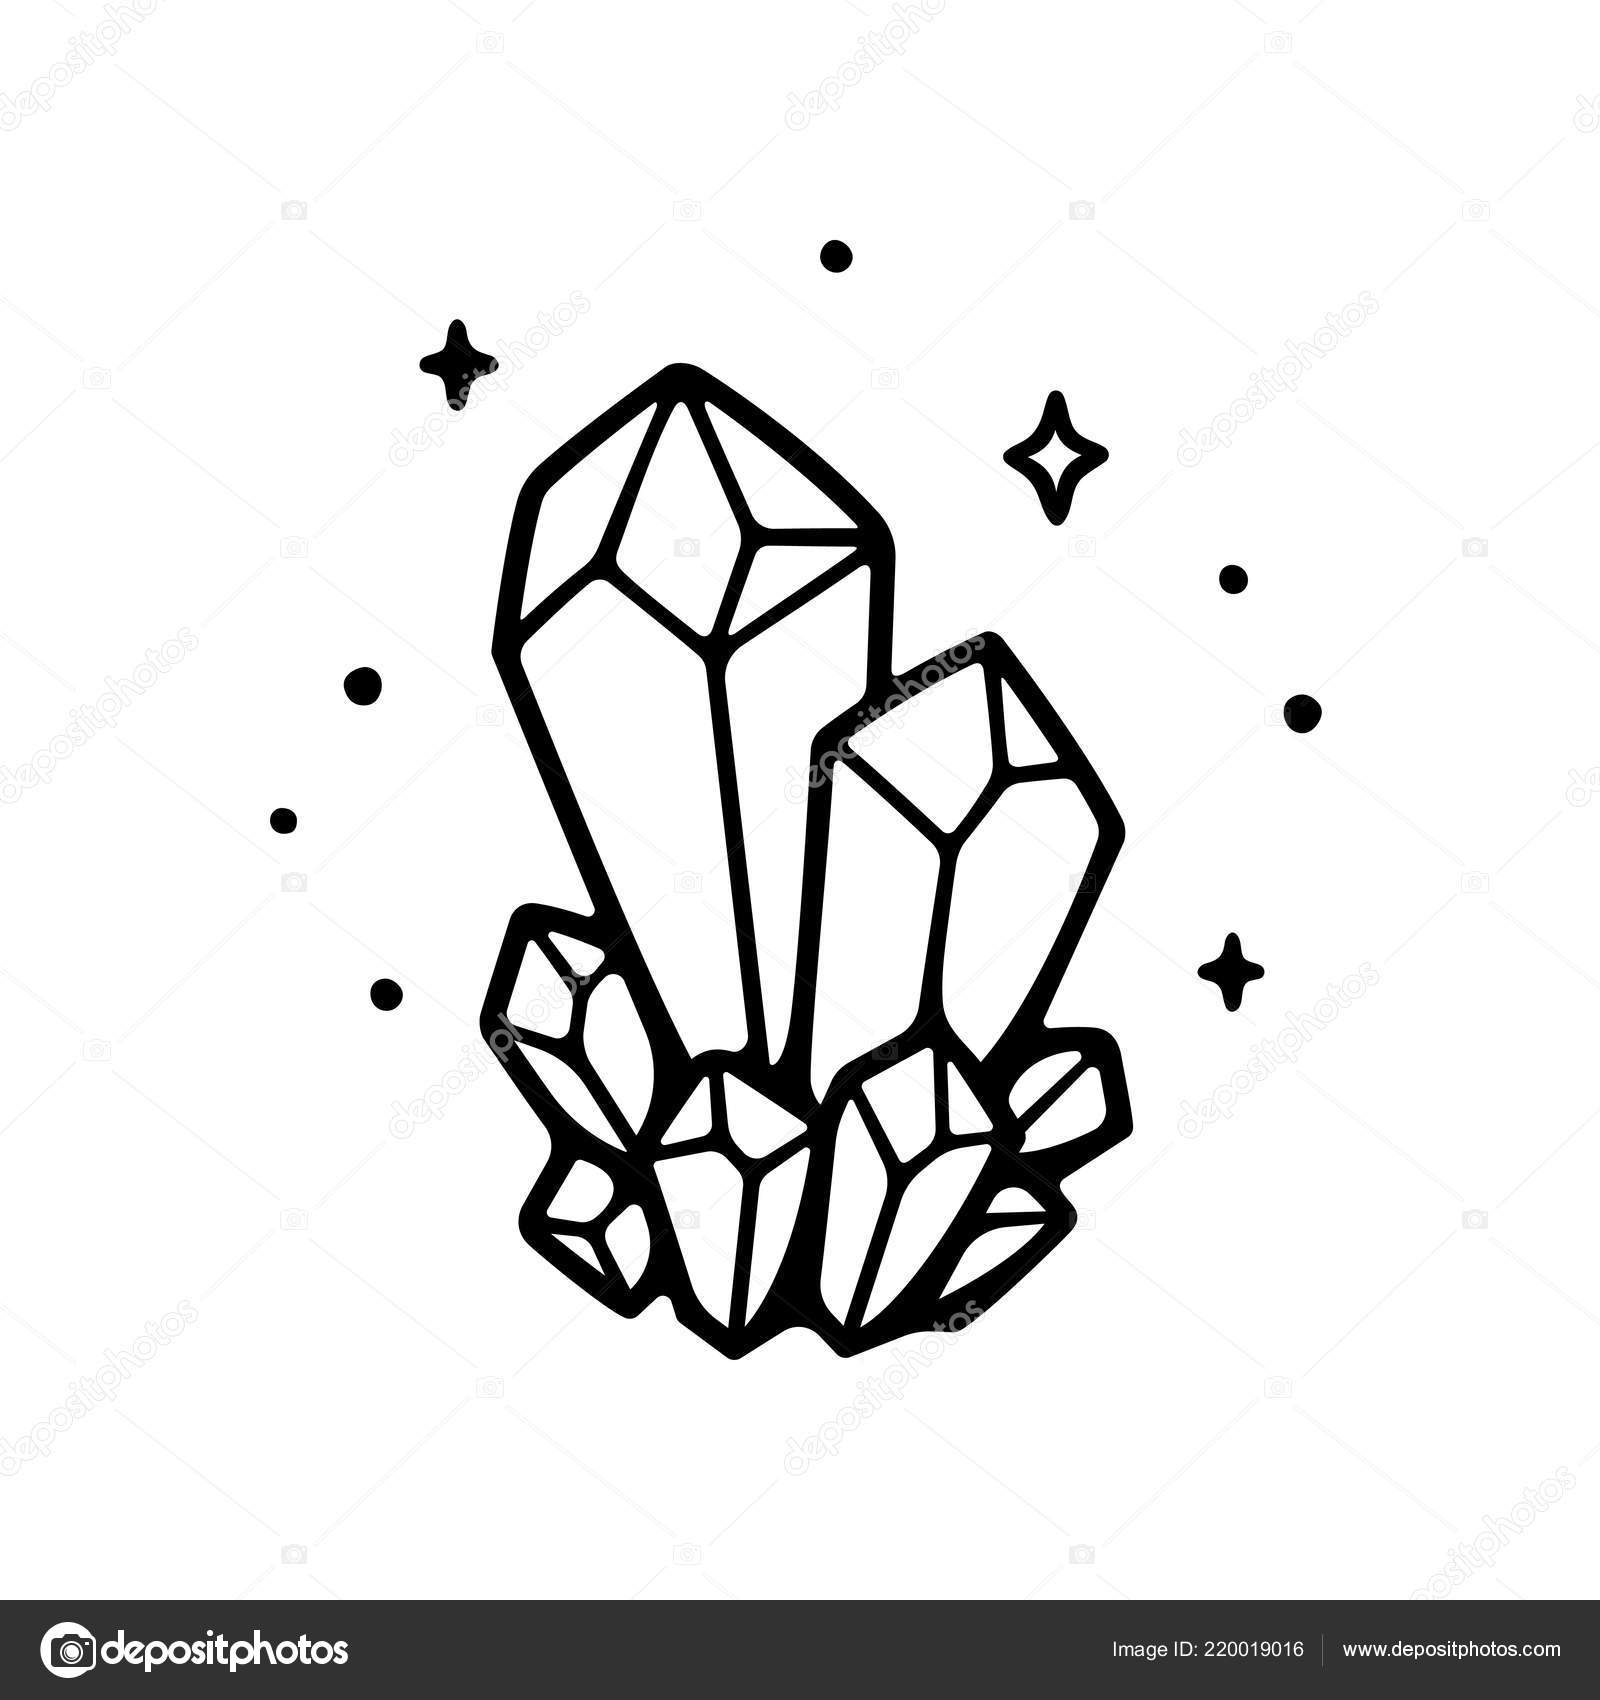 crystal illustration download